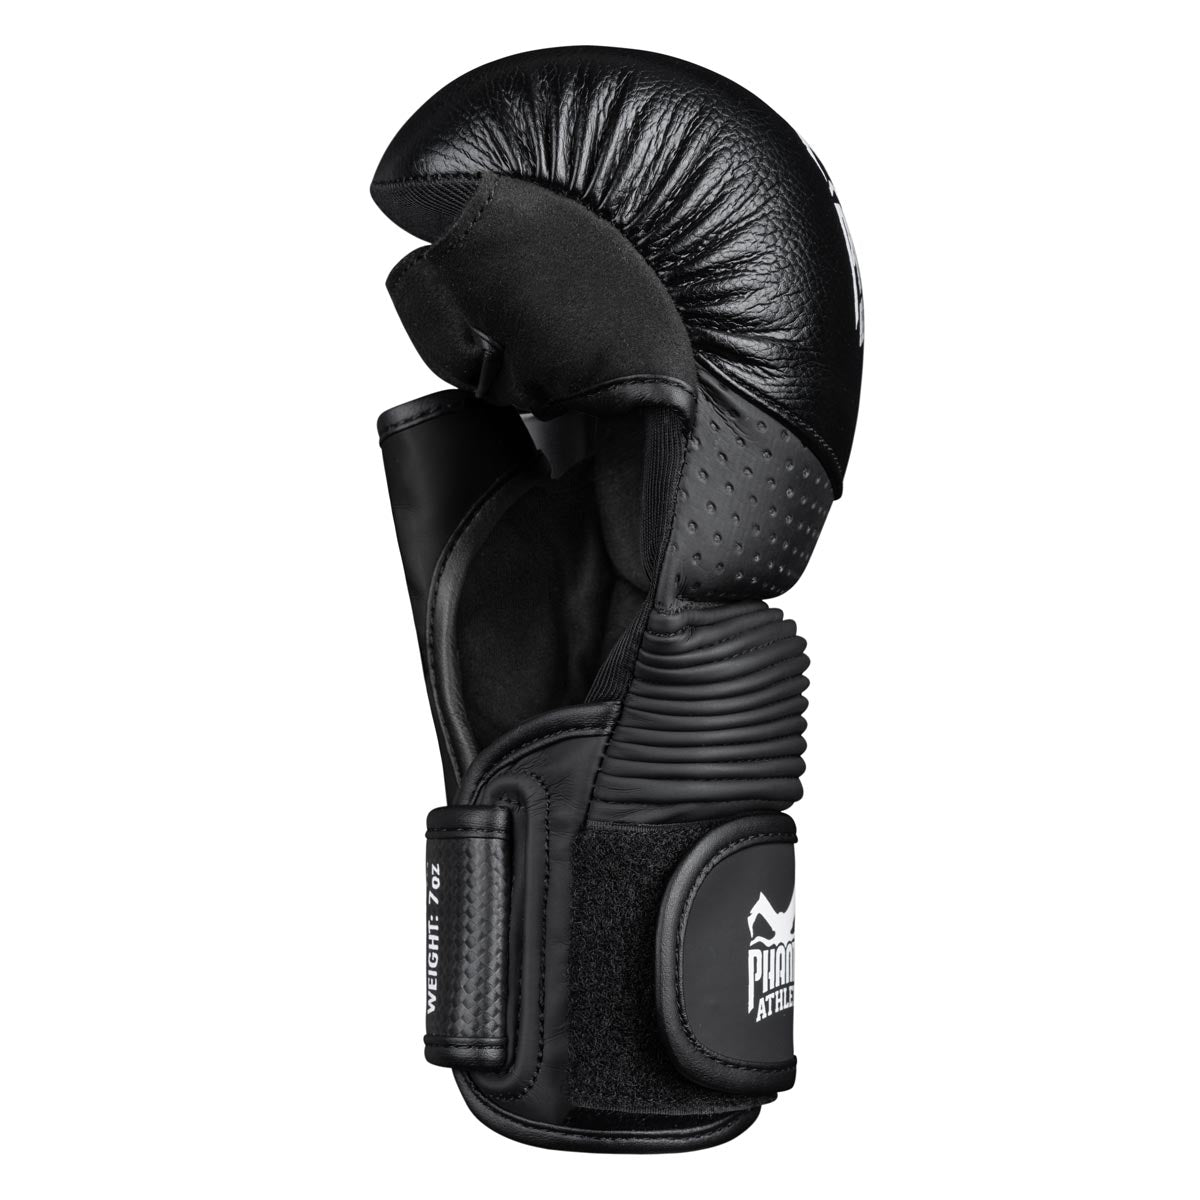 Die Phantom RIOT PRO MMA Sparringshandschuhe. Ideal für dein Kampfsport Training und Amateur Wettkämpfe. Die hochwertigsten und sichersten MMA Handschuhe auf dem Markt.  Perfekte Passform und überragende Qualität für Training und Sparring. Die RIOT Pro können mit oder ohne Bandagen getragen werden. 